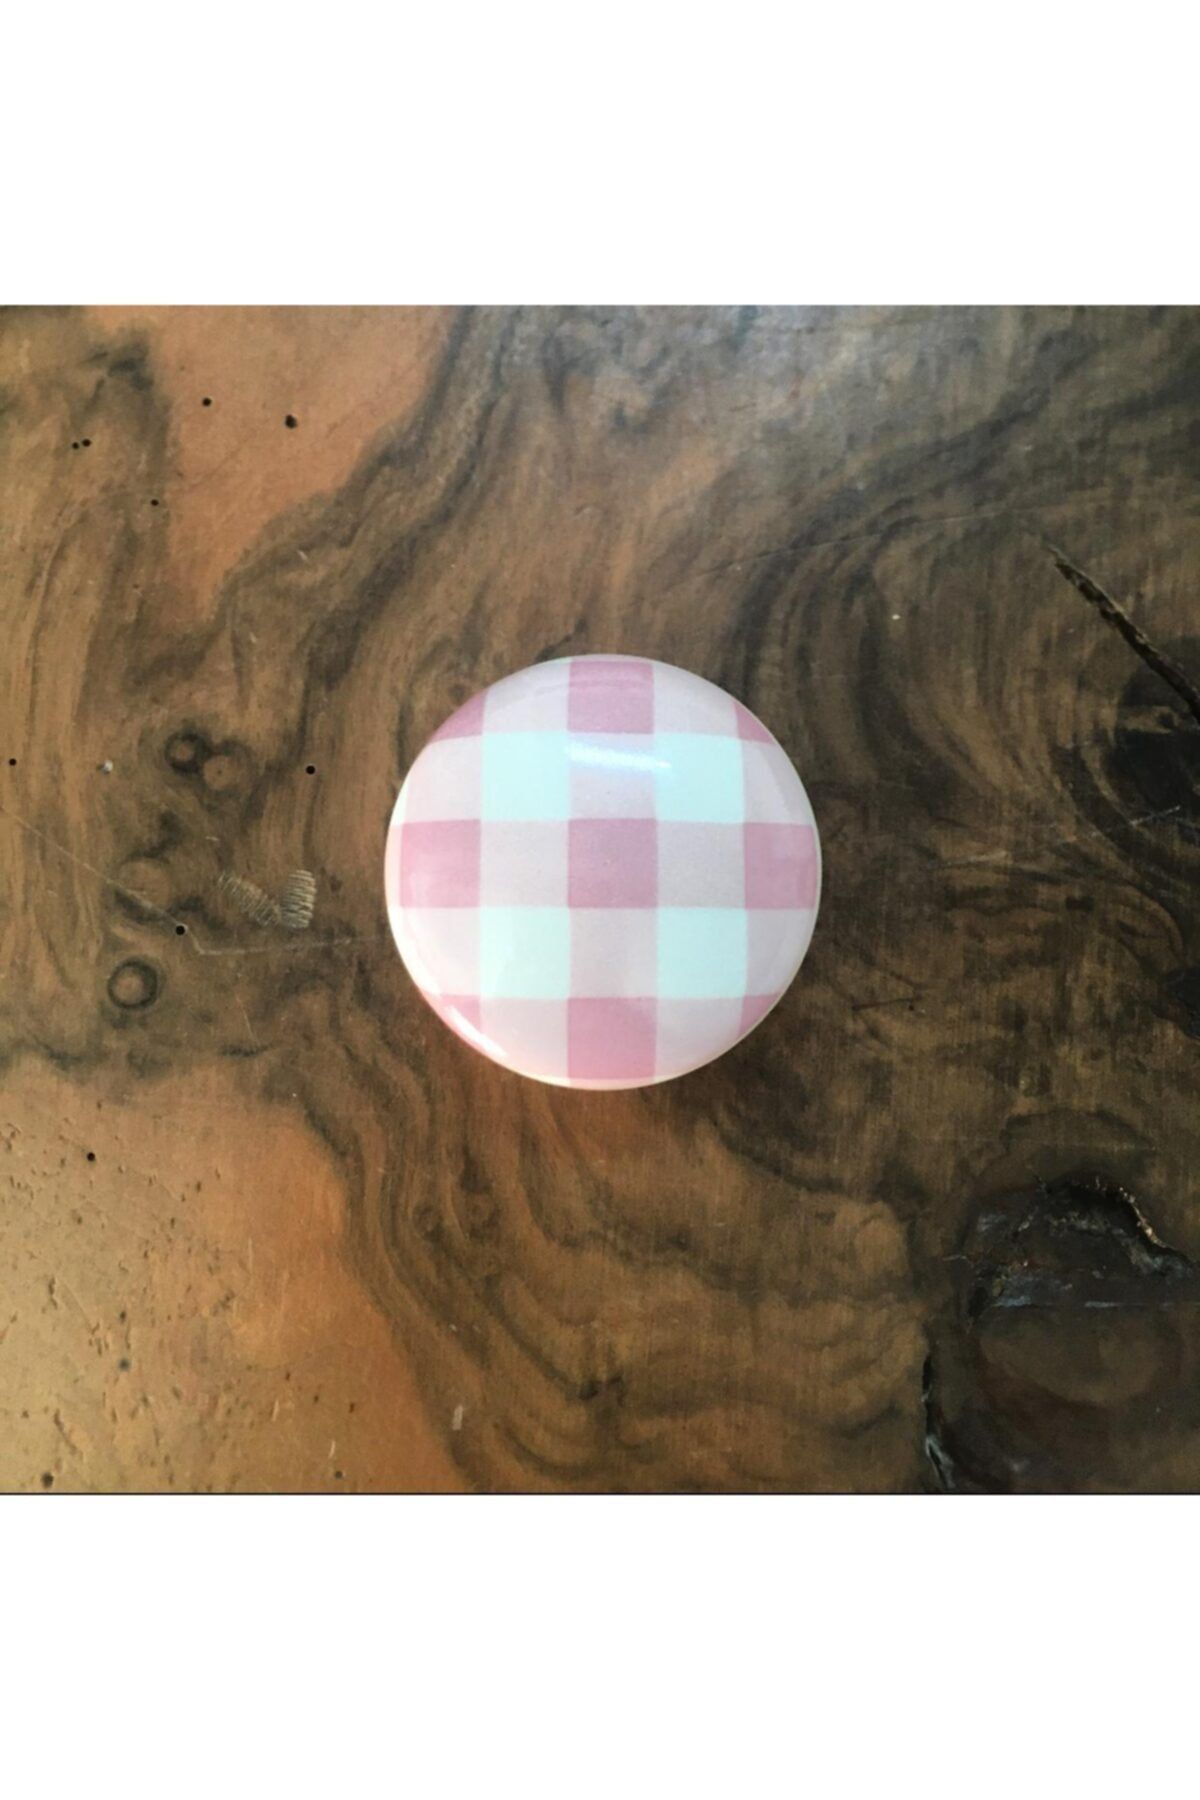 Esal Porselen Ufo Düğme Kulp (çap Ölçüsü 5cm)